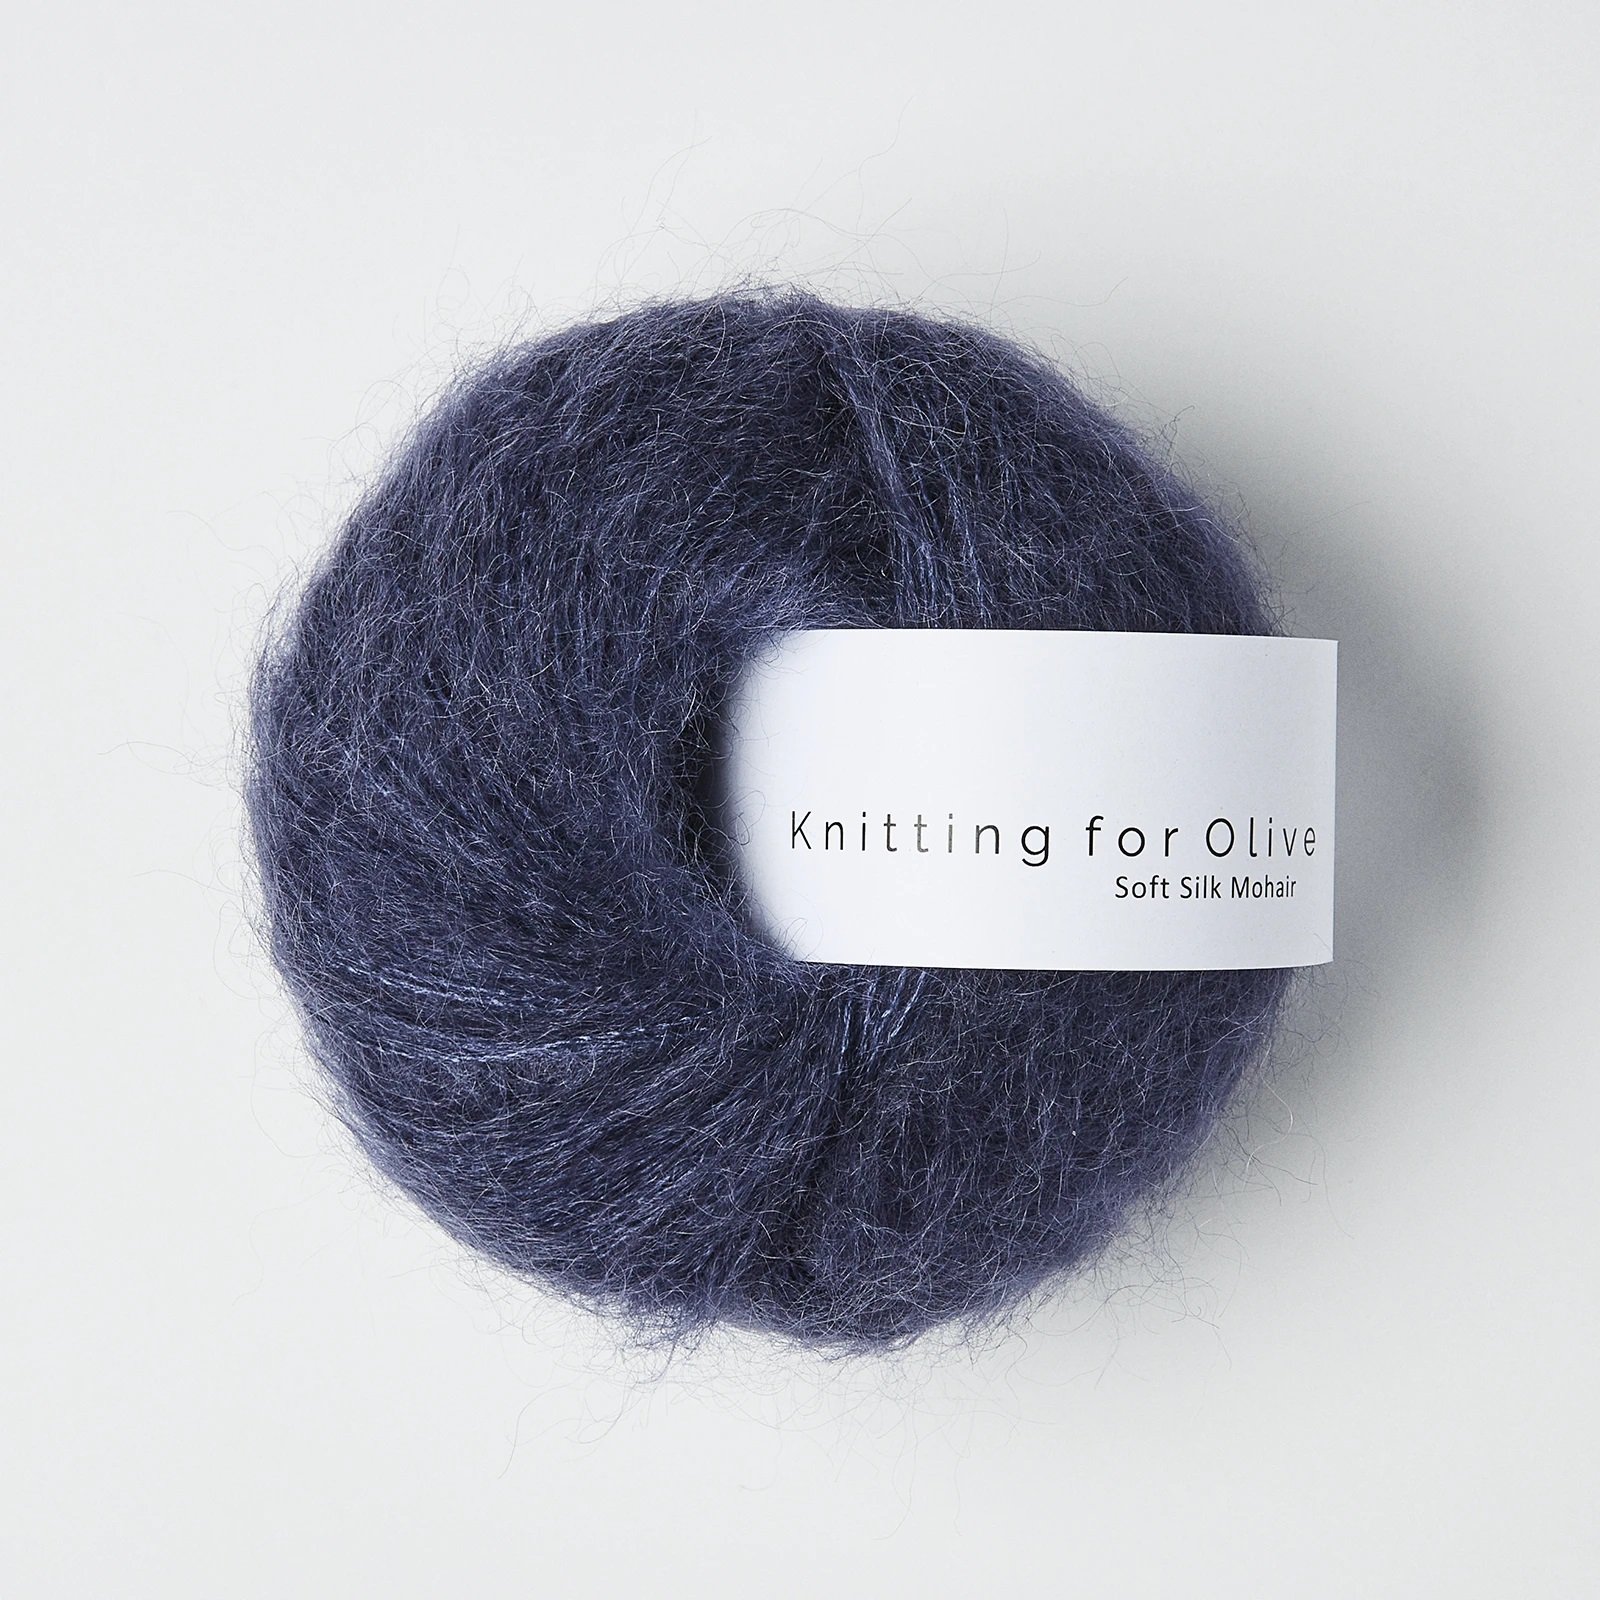 Knitting_for_olive_soft_silk_mohair_moerkeblaa